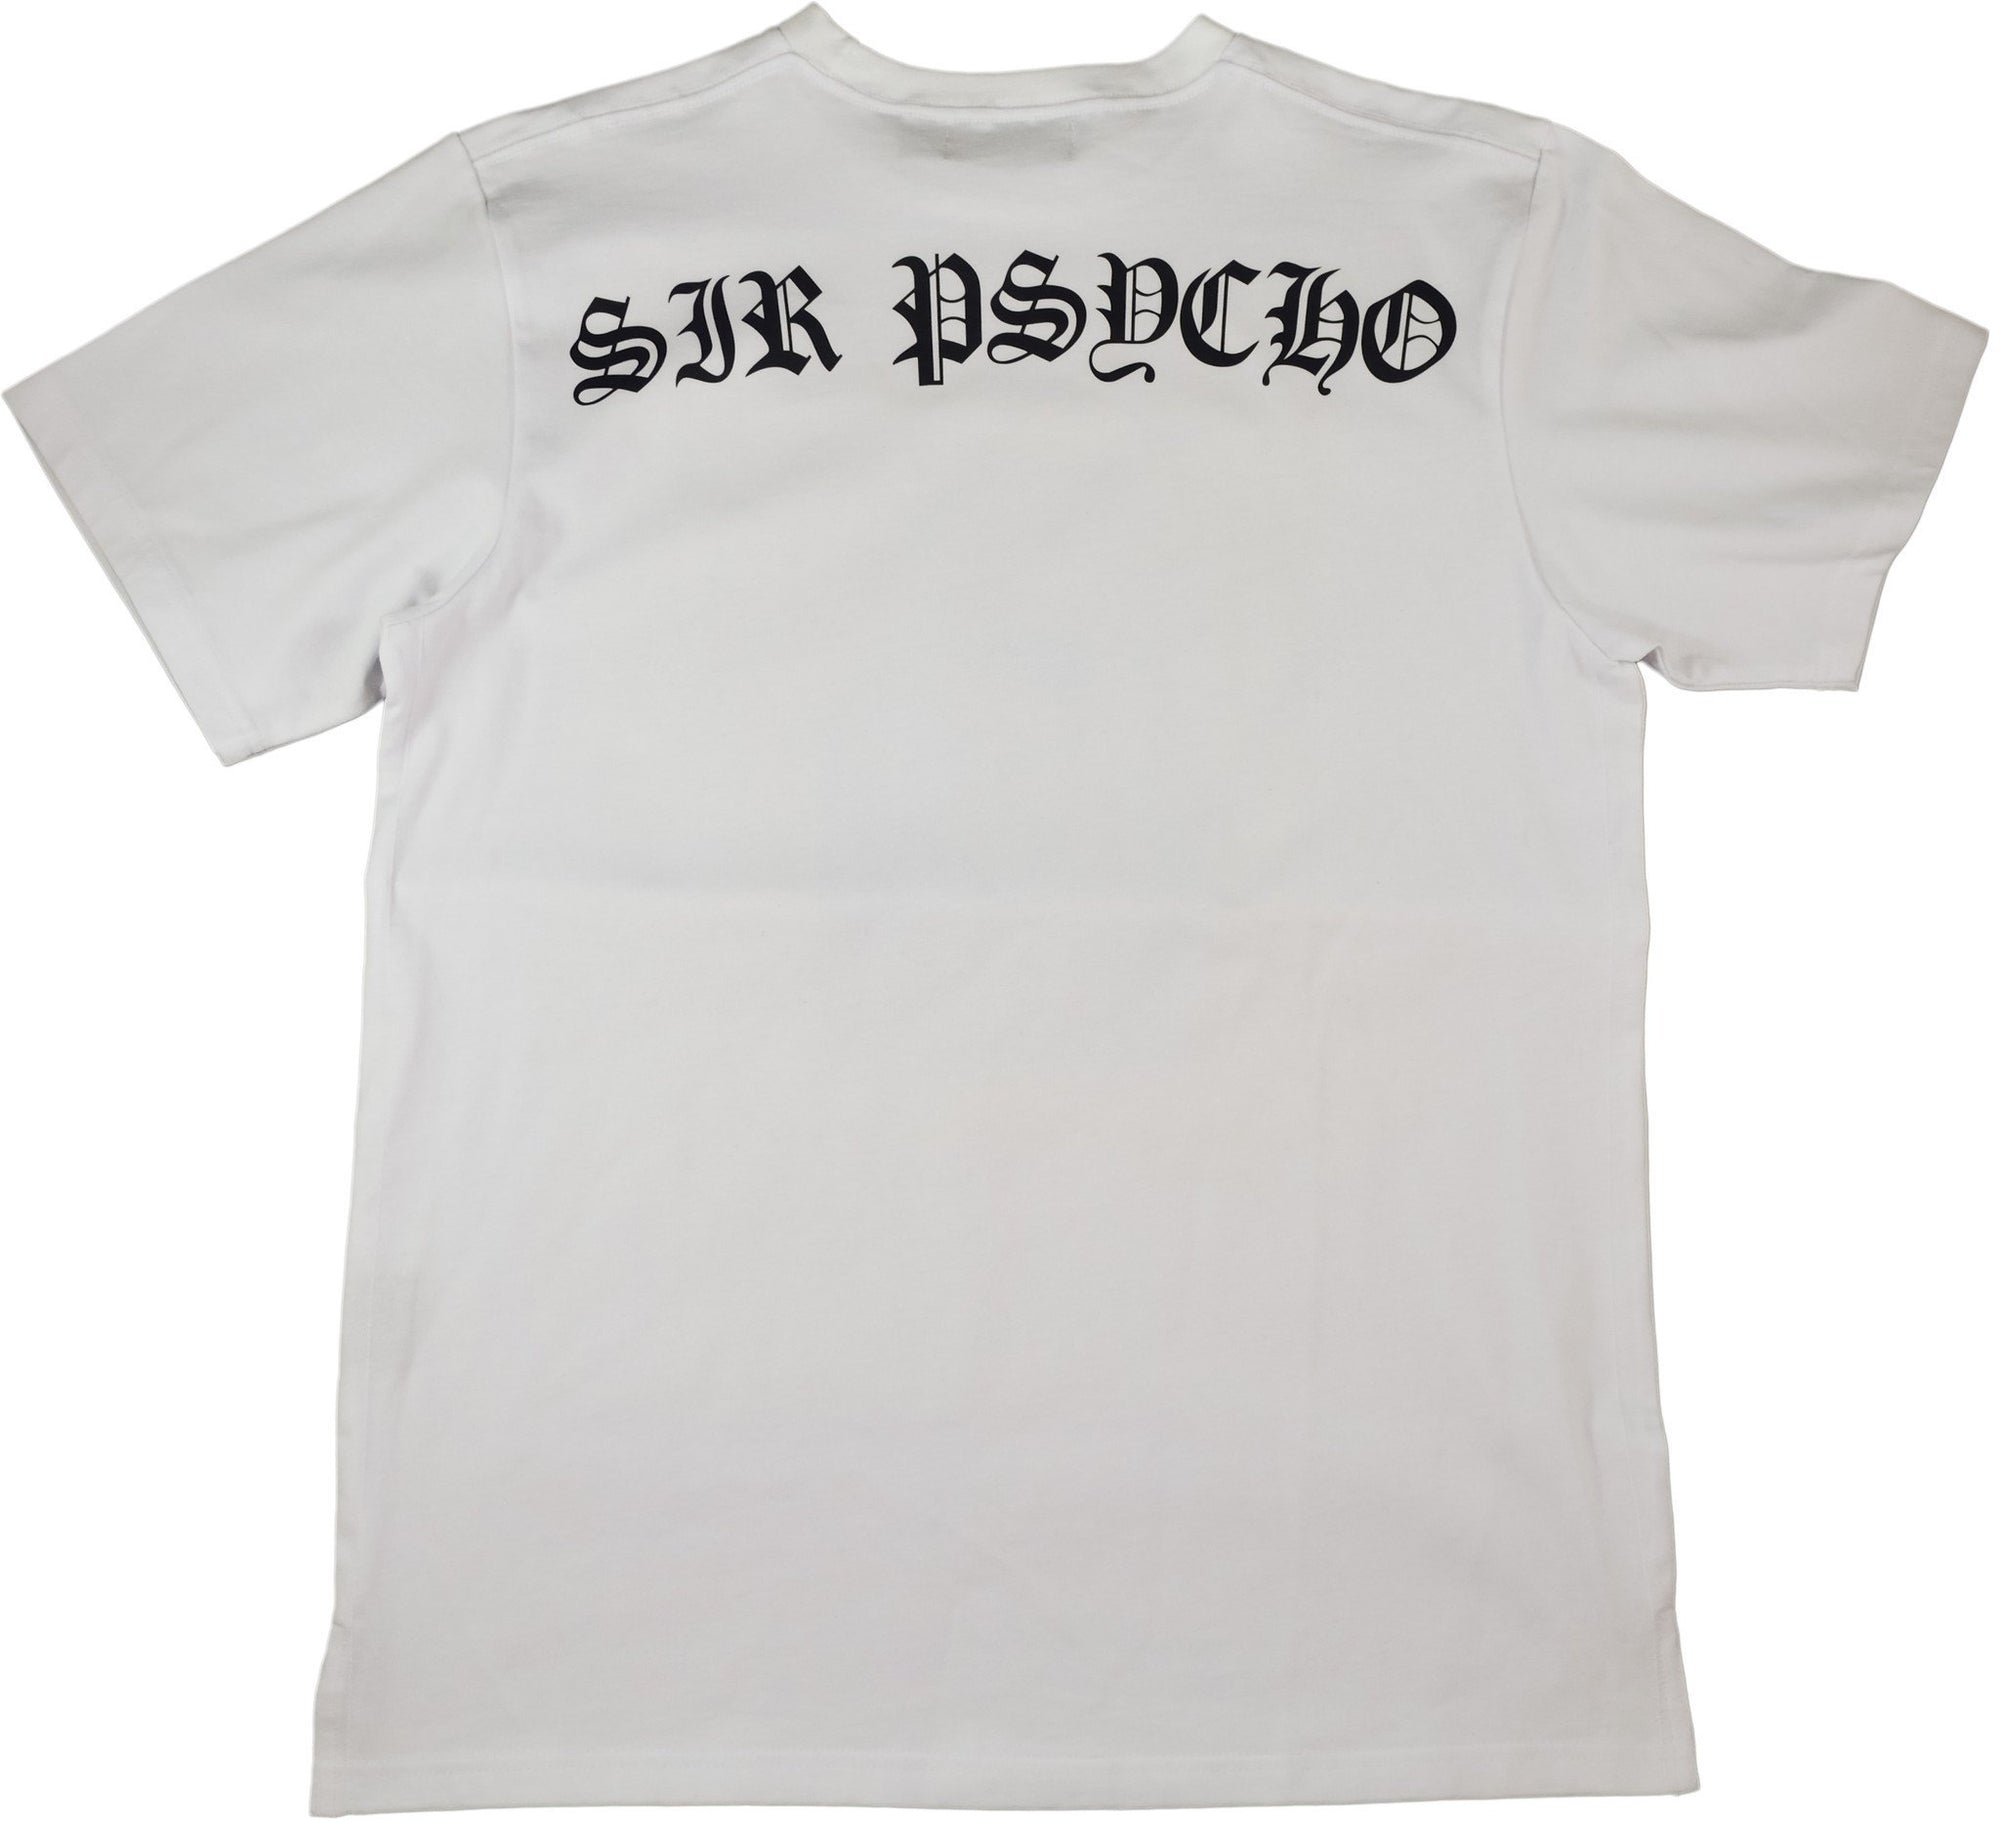 DarqMatterDesign CutnSew T-Shirts Sir Psycho